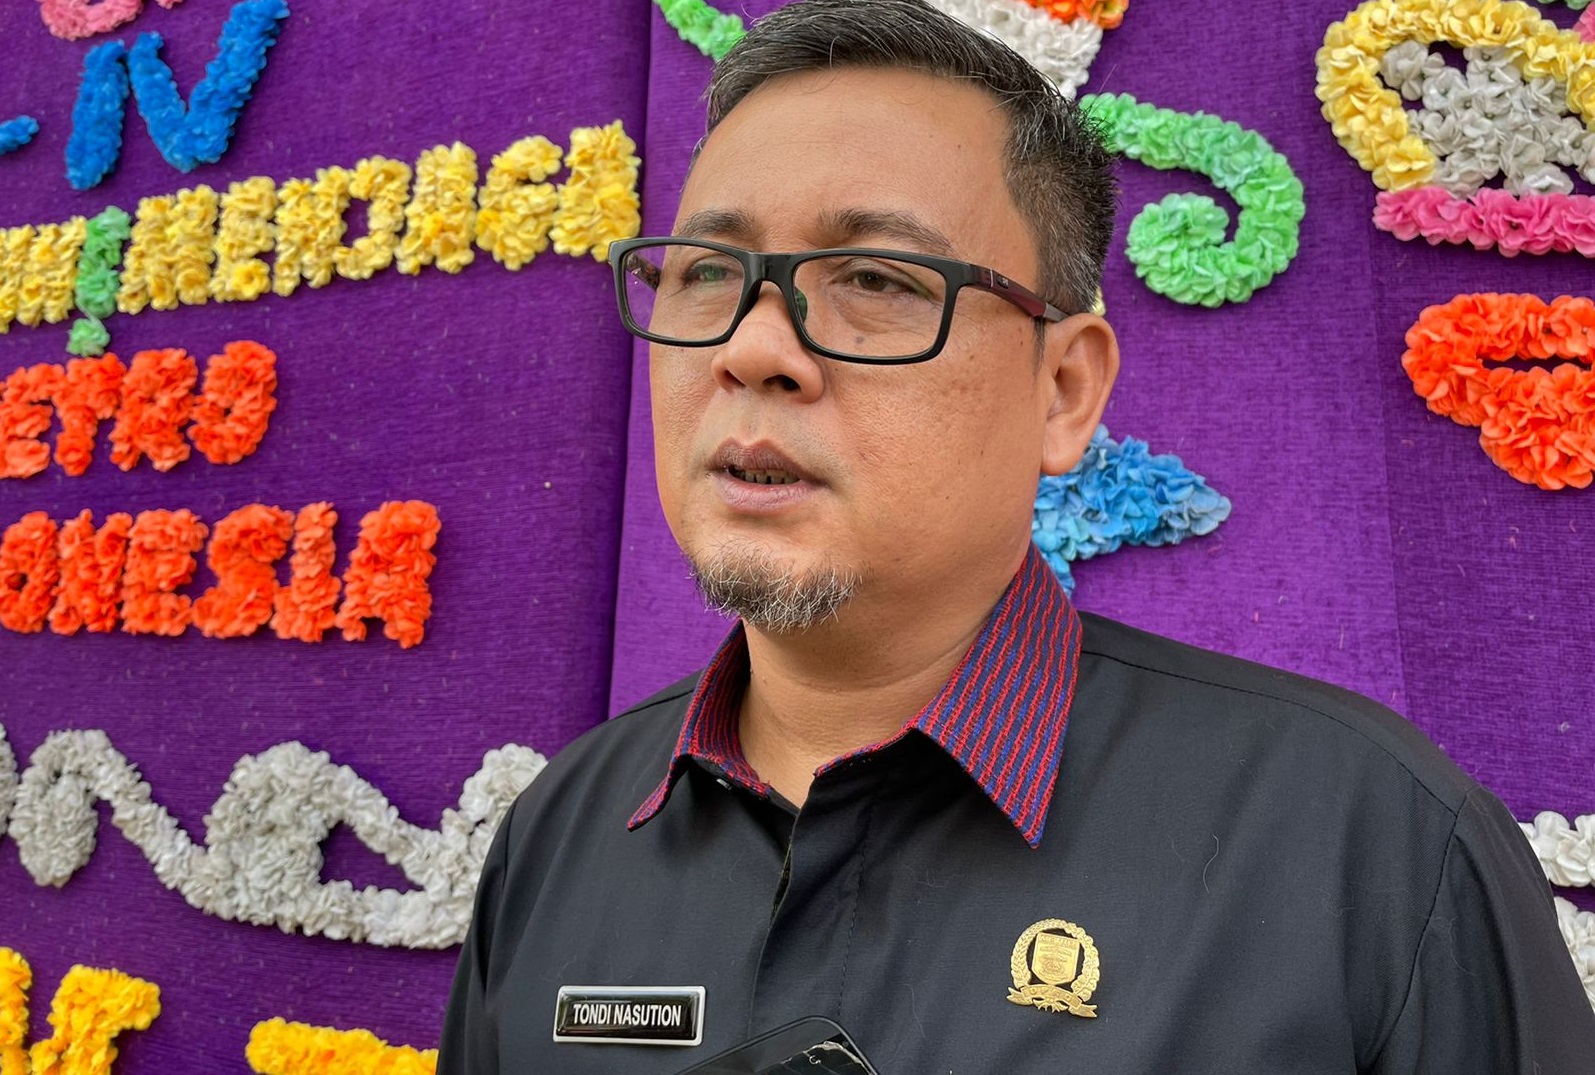 Soroti Masalah Sampah, Ketua DPRD Metro: Kalau Pemkot Tidak Sanggup, Cari Investor untuk Mengelolanya